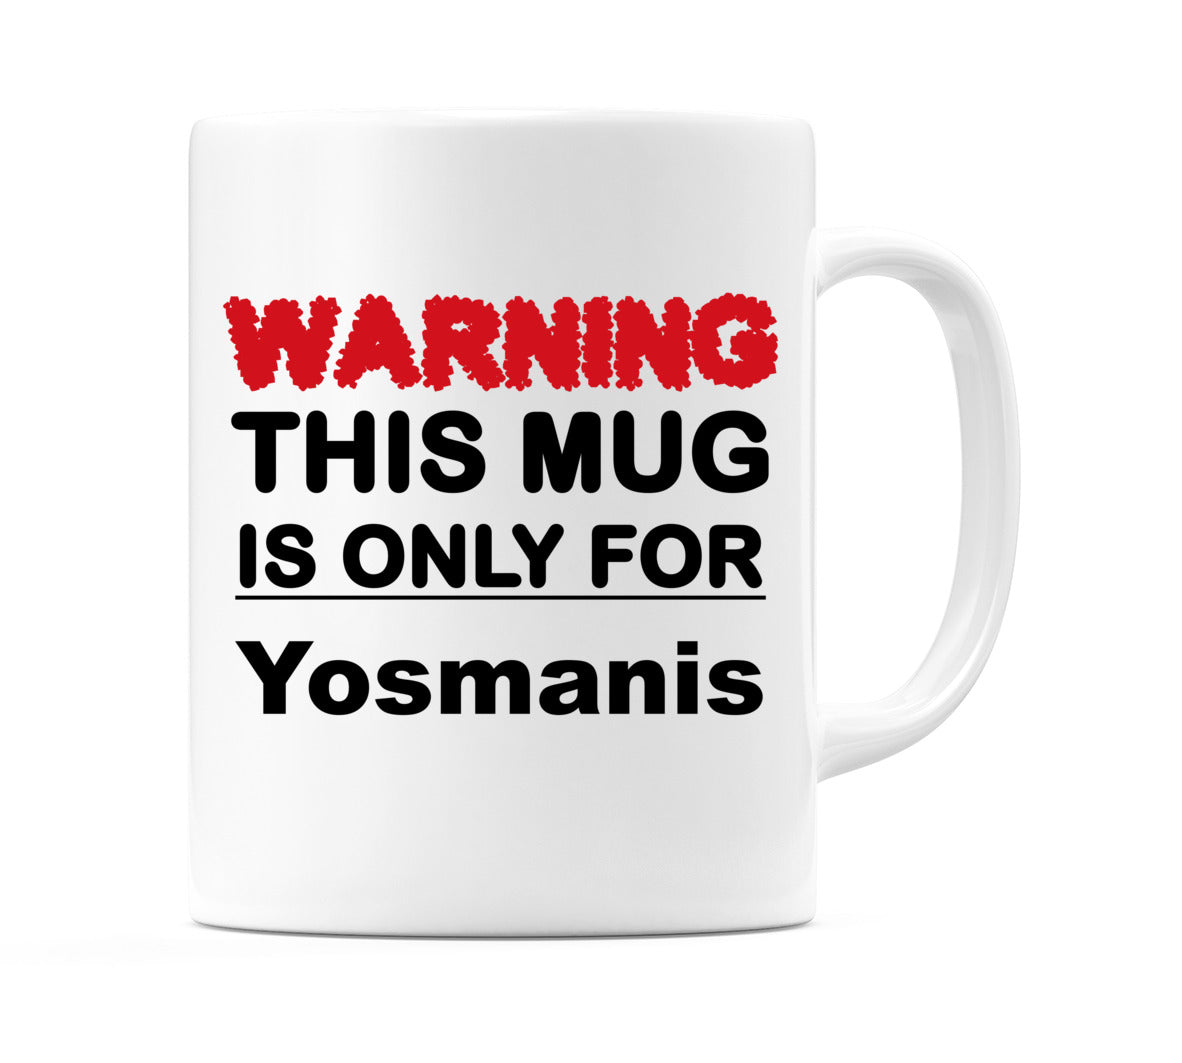 Warning This Mug is ONLY for Yosmanis Mug